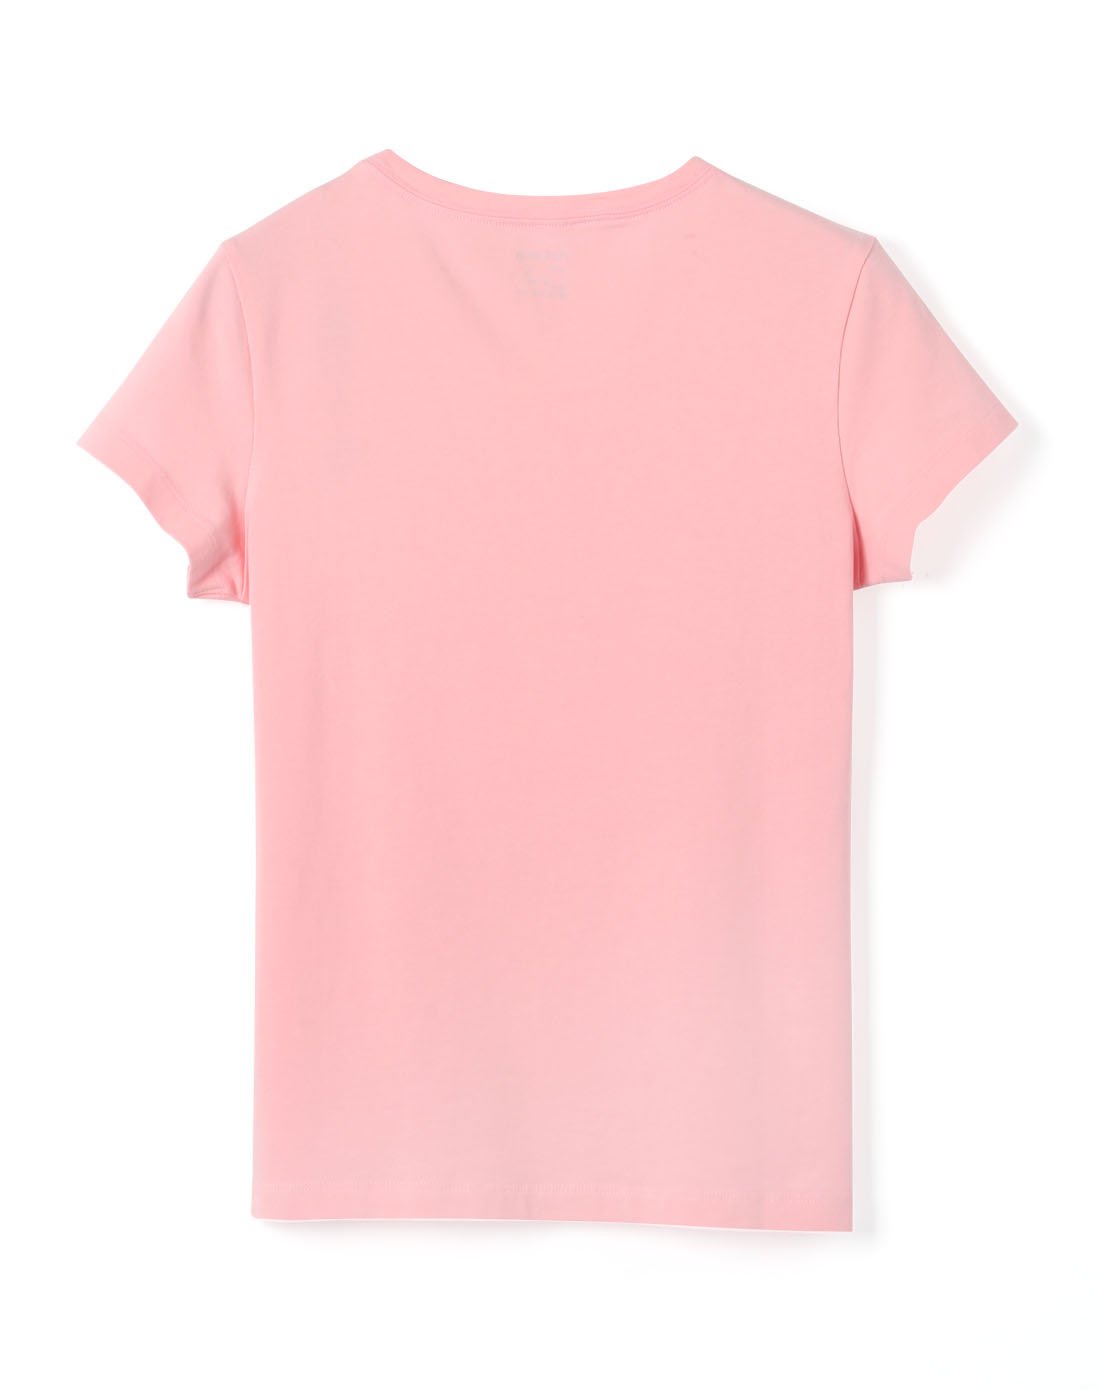 全棉时代春夏粉色女式短袖t恤衫,1件装